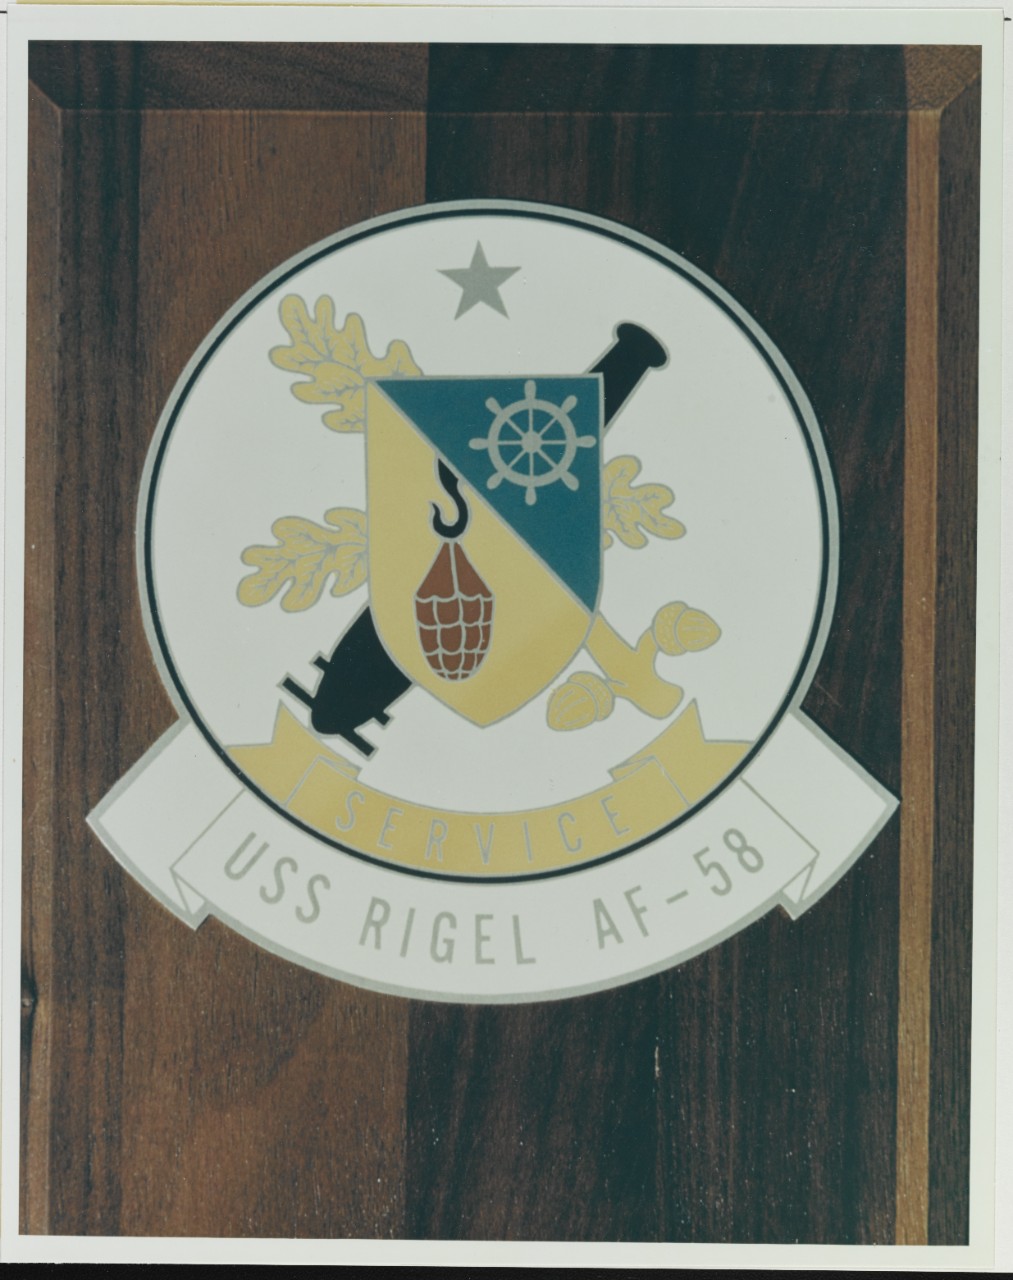 Insignia: USS RIGEL (AF-58)